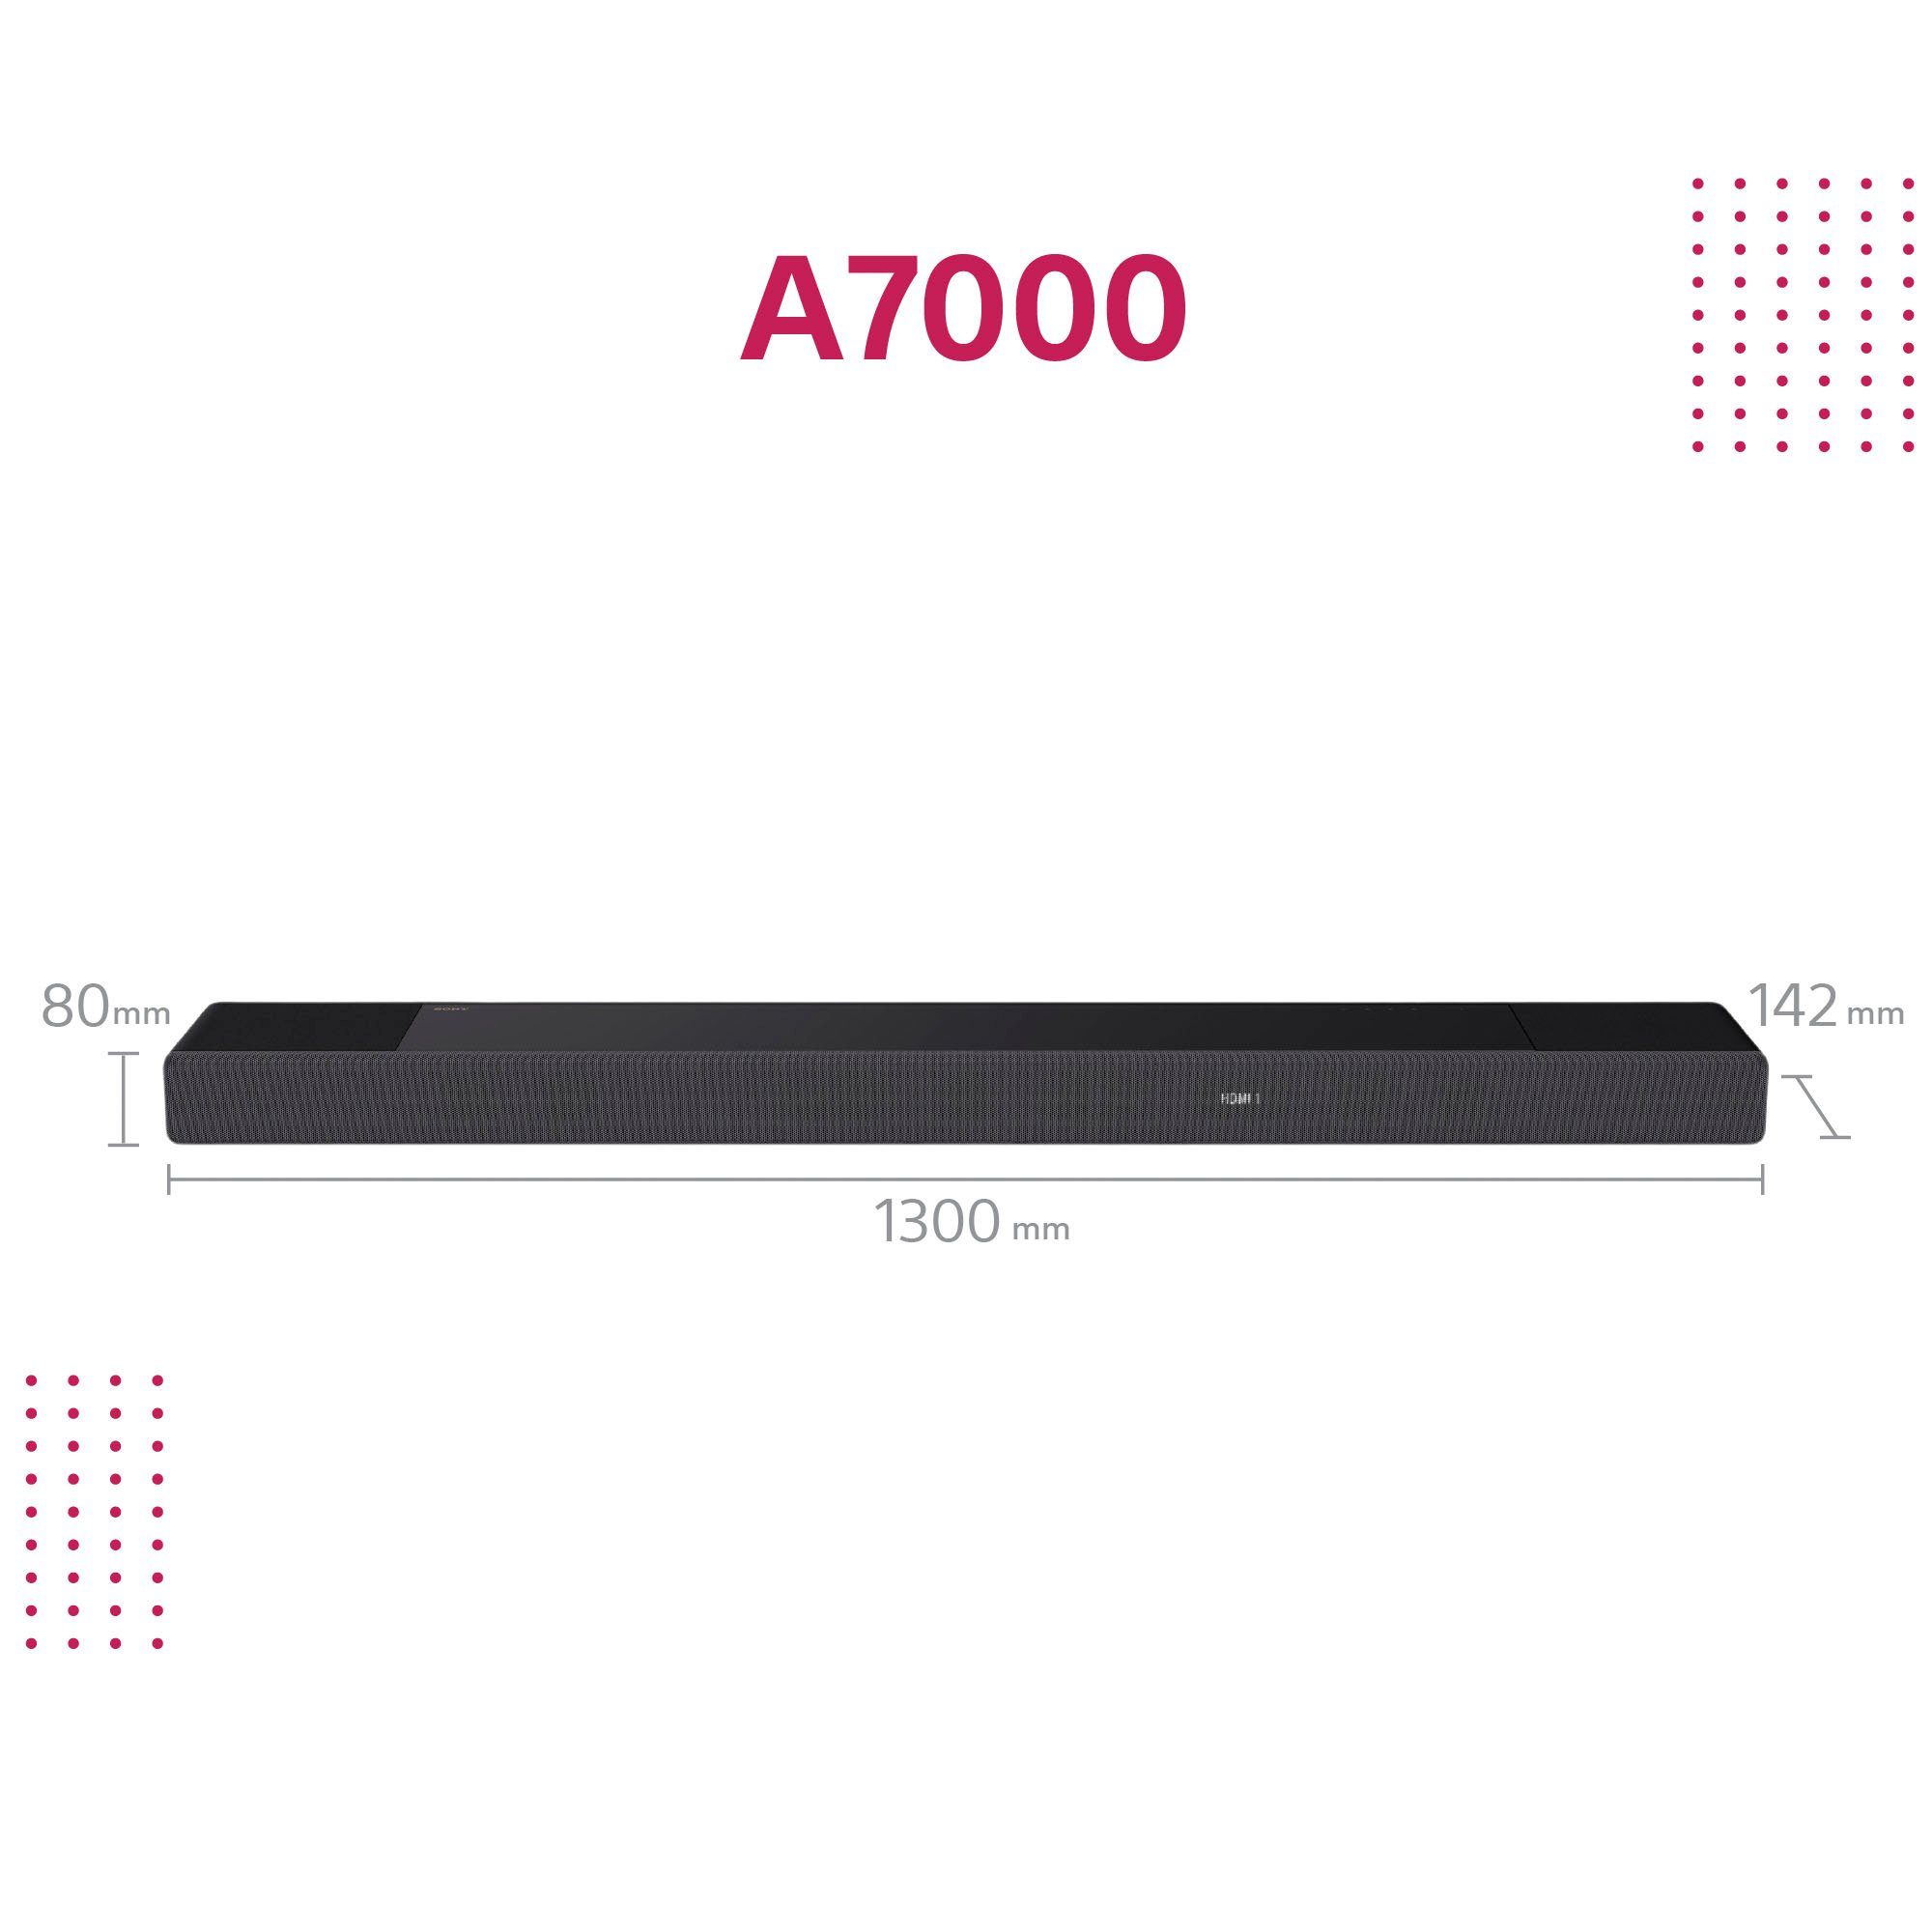 Sony HT-A7000 7.1.2 500W Soundbar Audio, Acoustic Gesamtleistung) High-Res WLAN LAN (Bluetooth, HDMI, (WiFi), Center (Ethernet), Sync